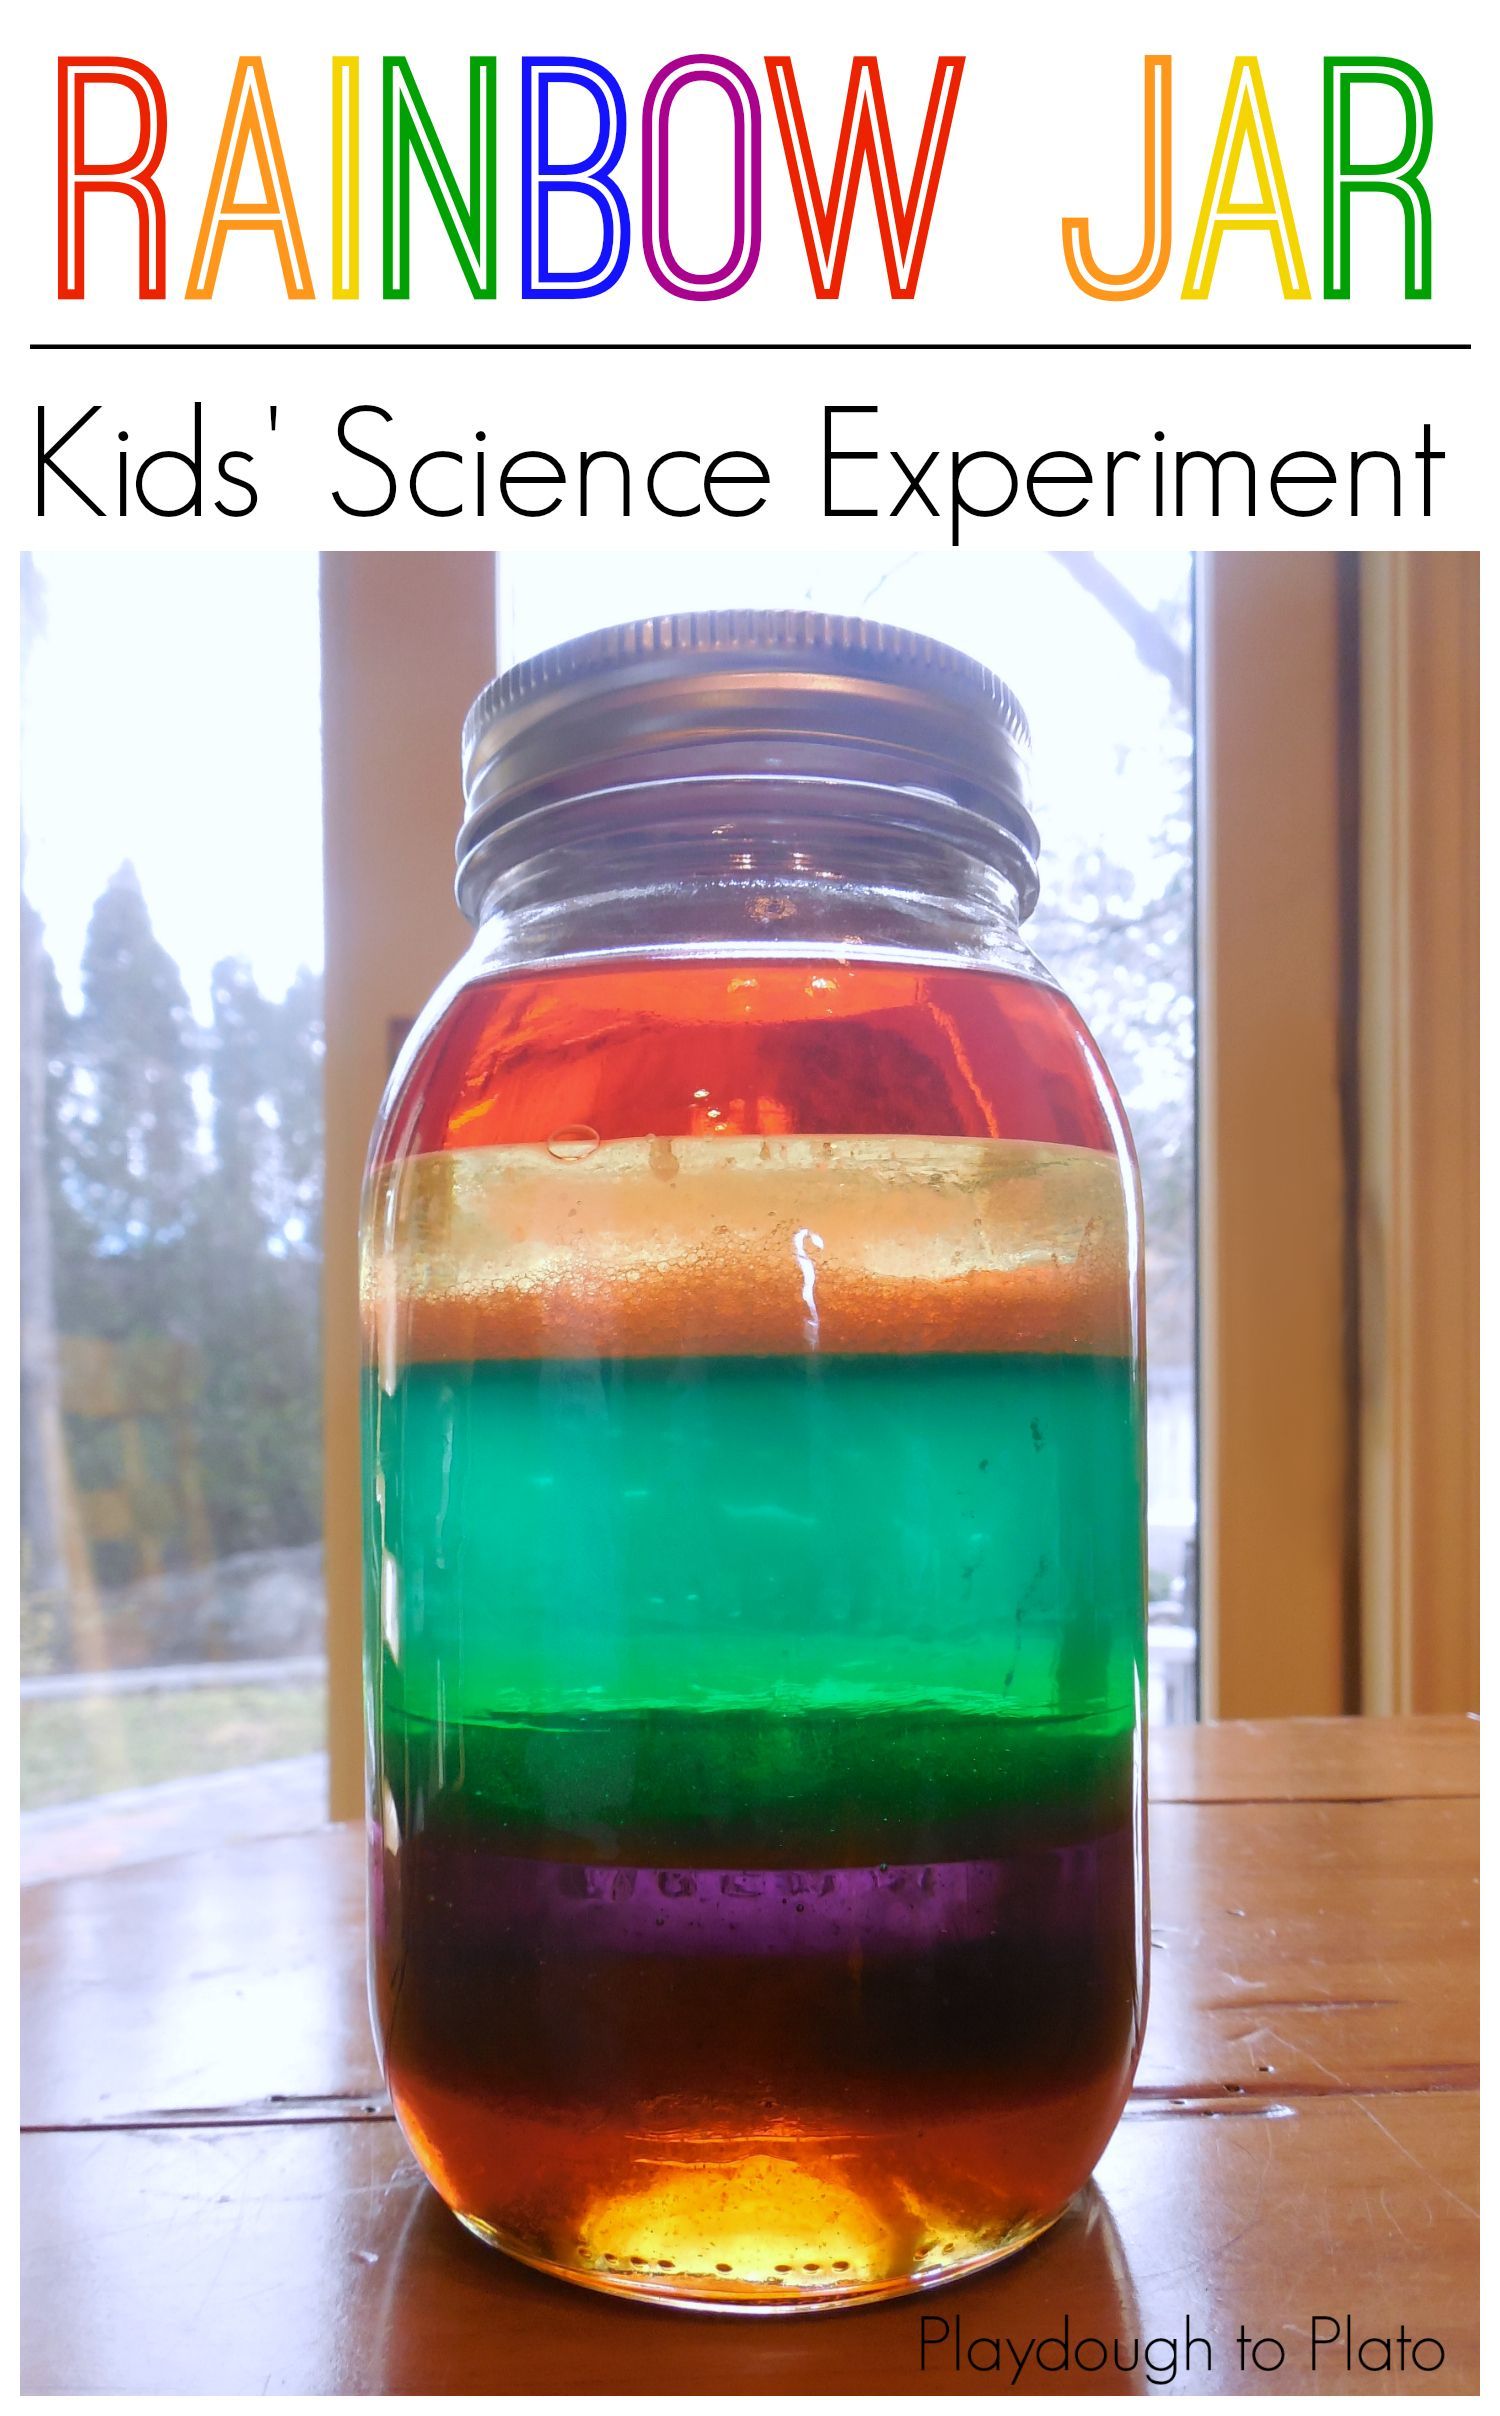 Science for kids, kids scie